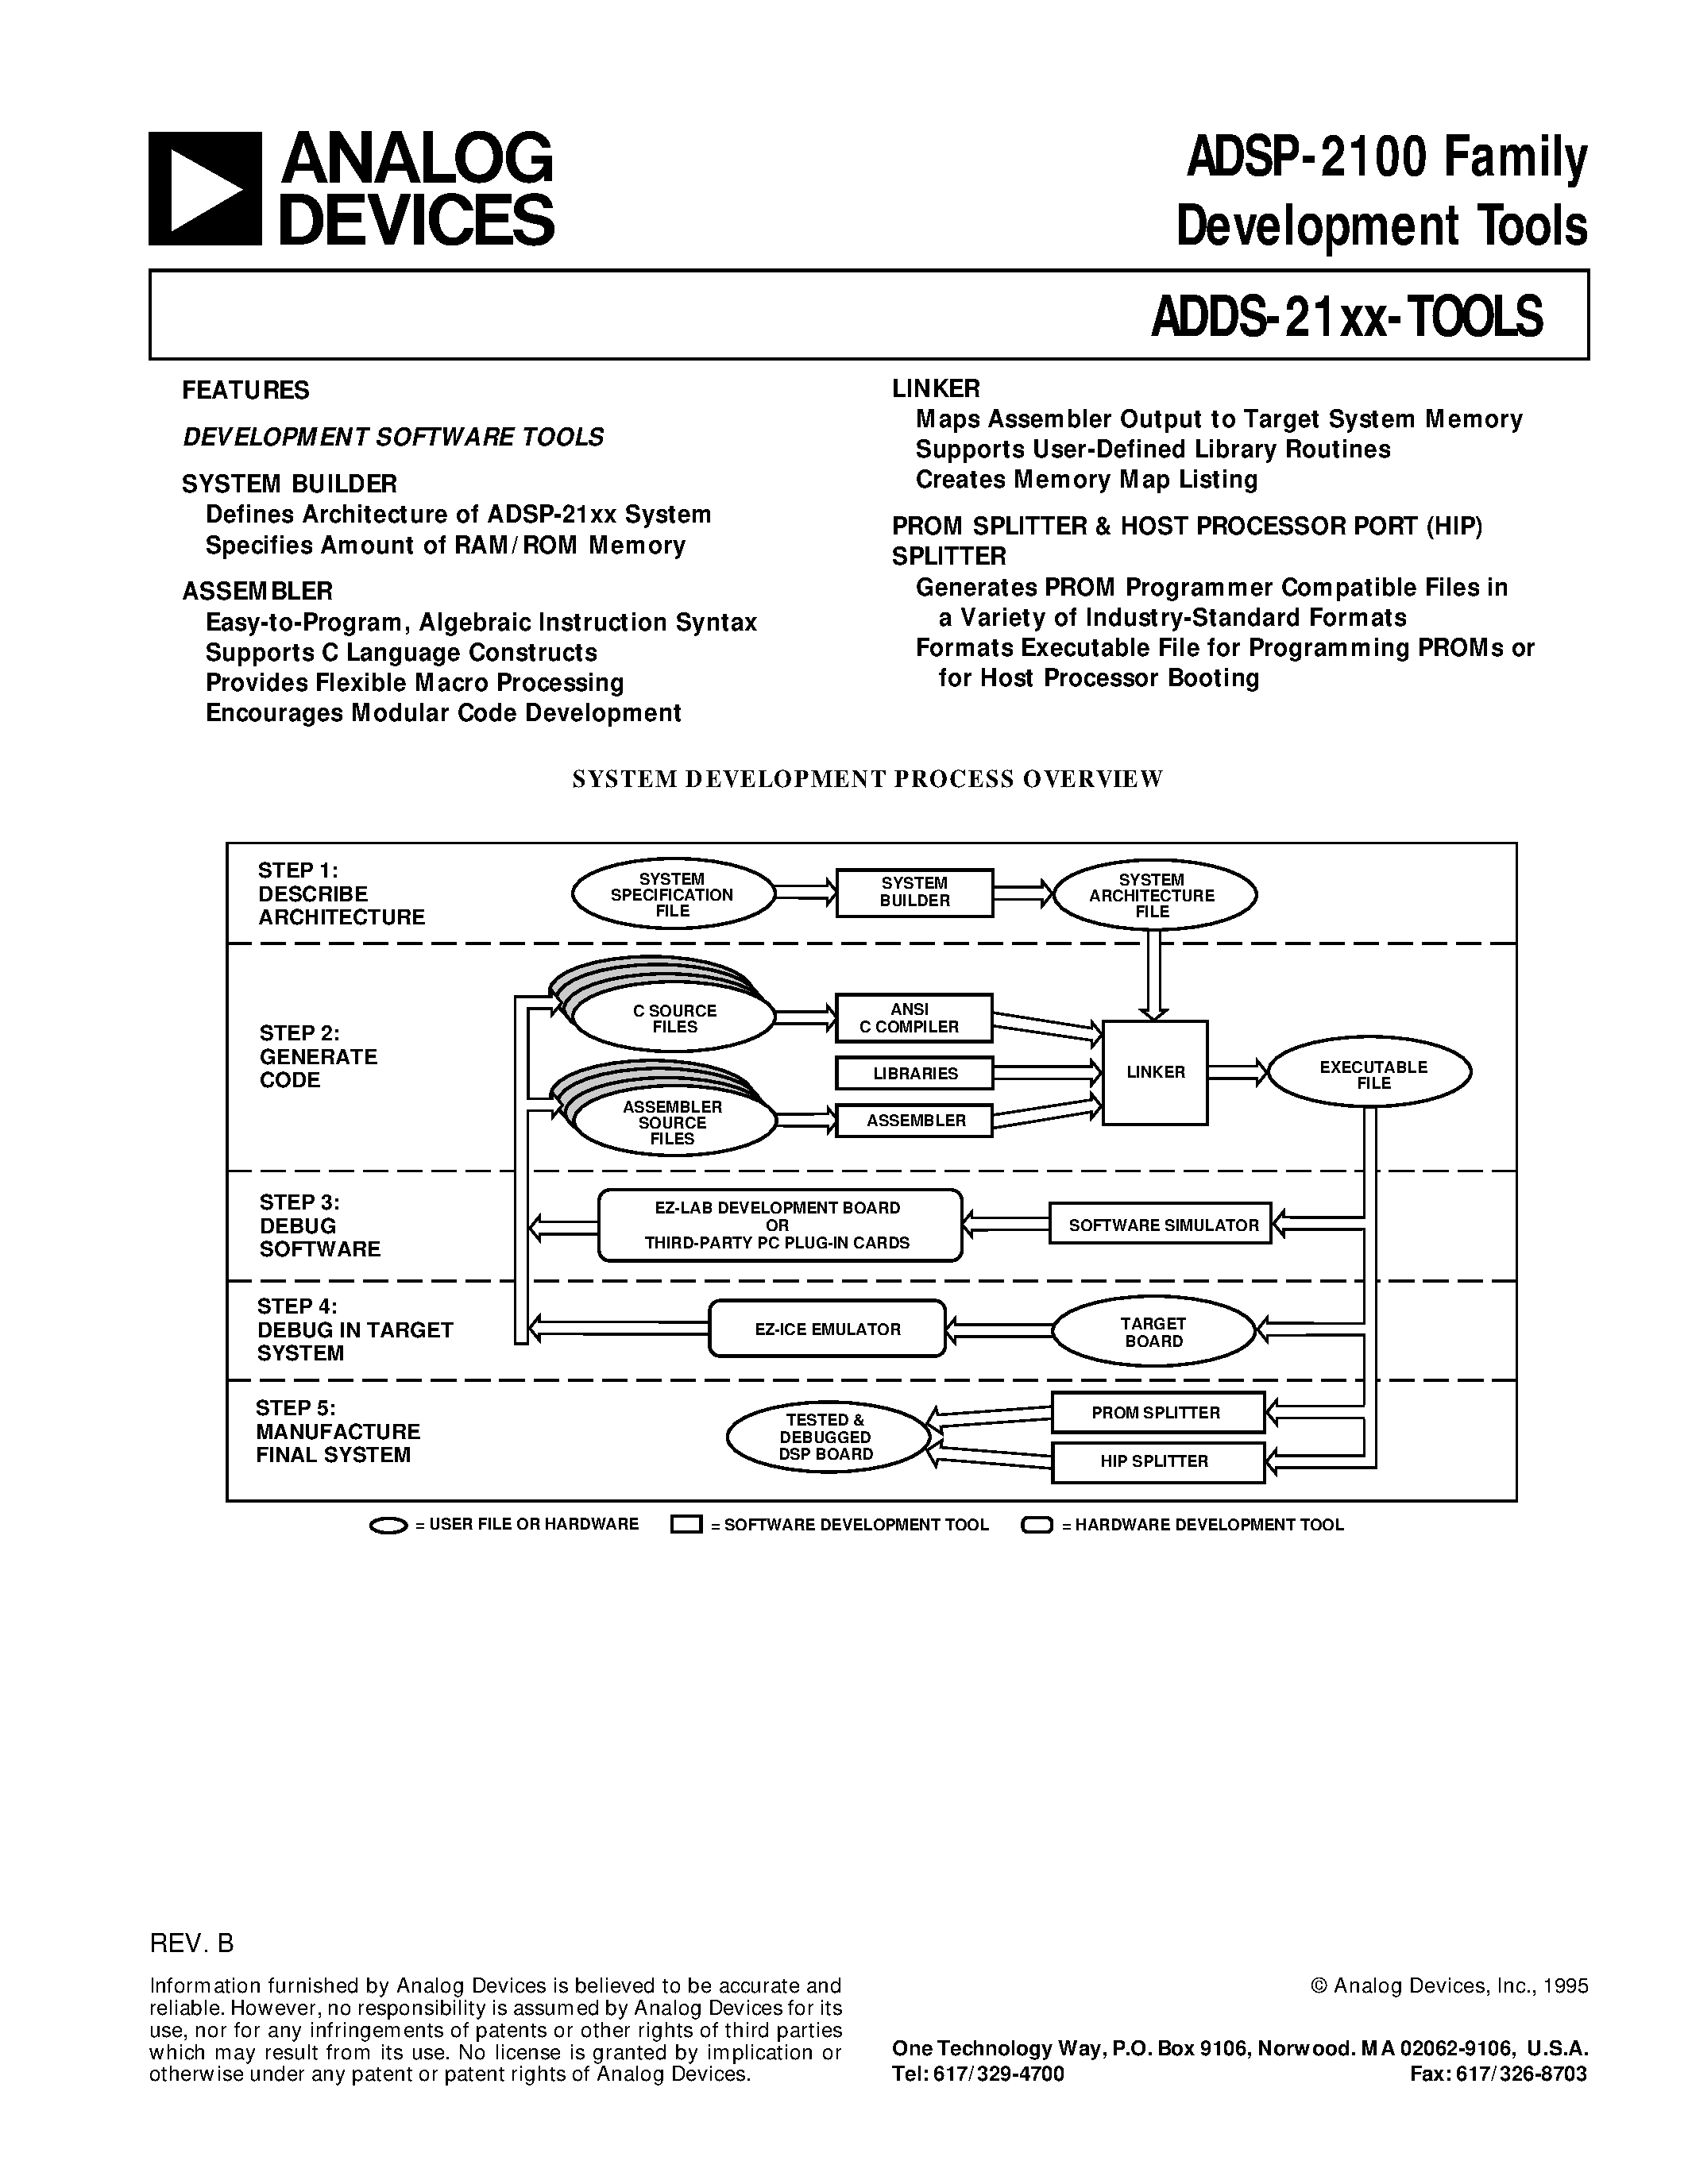 Даташит ADDS-2111-EZ-KIT - ADSP-2100 Family Development Tools страница 1